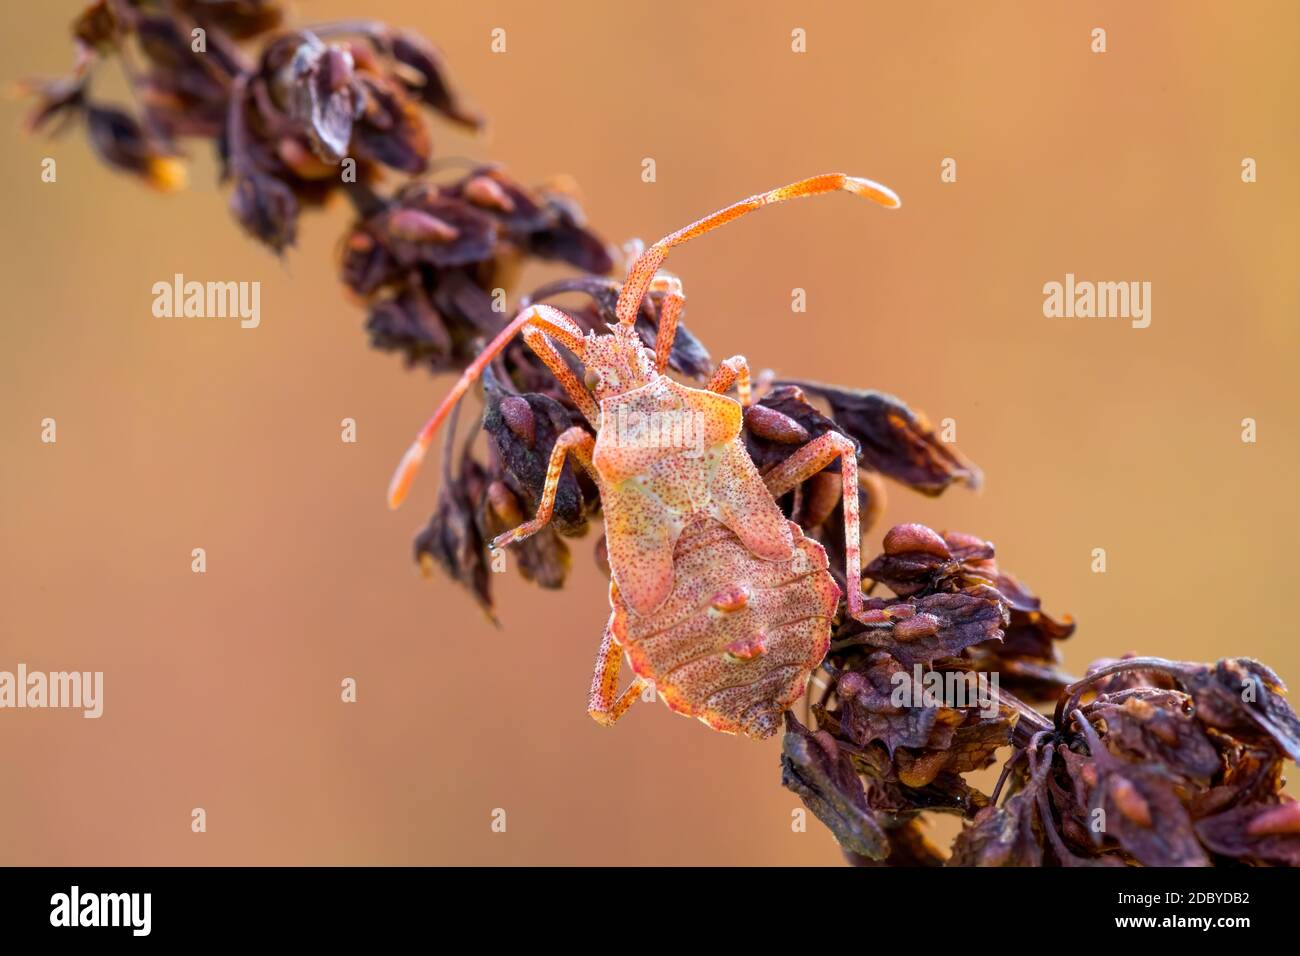 Dettaglio di bug nella foresta, scarabeo Hemiptera Heteroptera (Syromastus rhombeus), Europa, Repubblica Ceca fauna selvatica Foto Stock